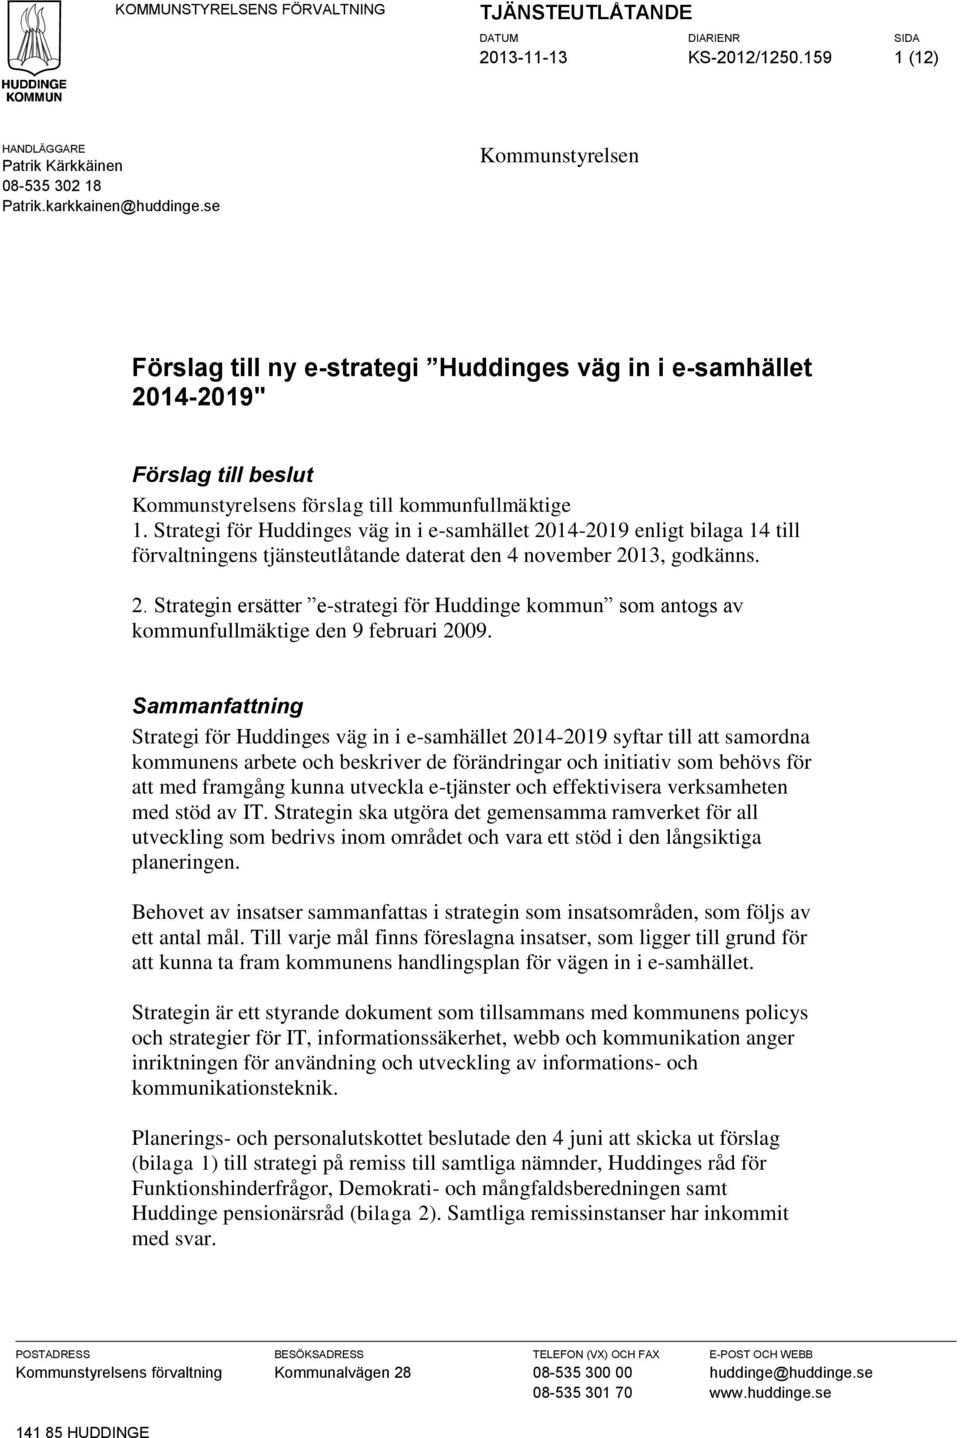 Strategi för Huddinges väg in i e-samhället 2014-2019 enligt bilaga 14 till förvaltningens tjänsteutlåtande daterat den 4 november 2013, godkänns. 2. Strategin ersätter e-strategi för Huddinge kommun som antogs av kommunfullmäktige den 9 februari 2009.